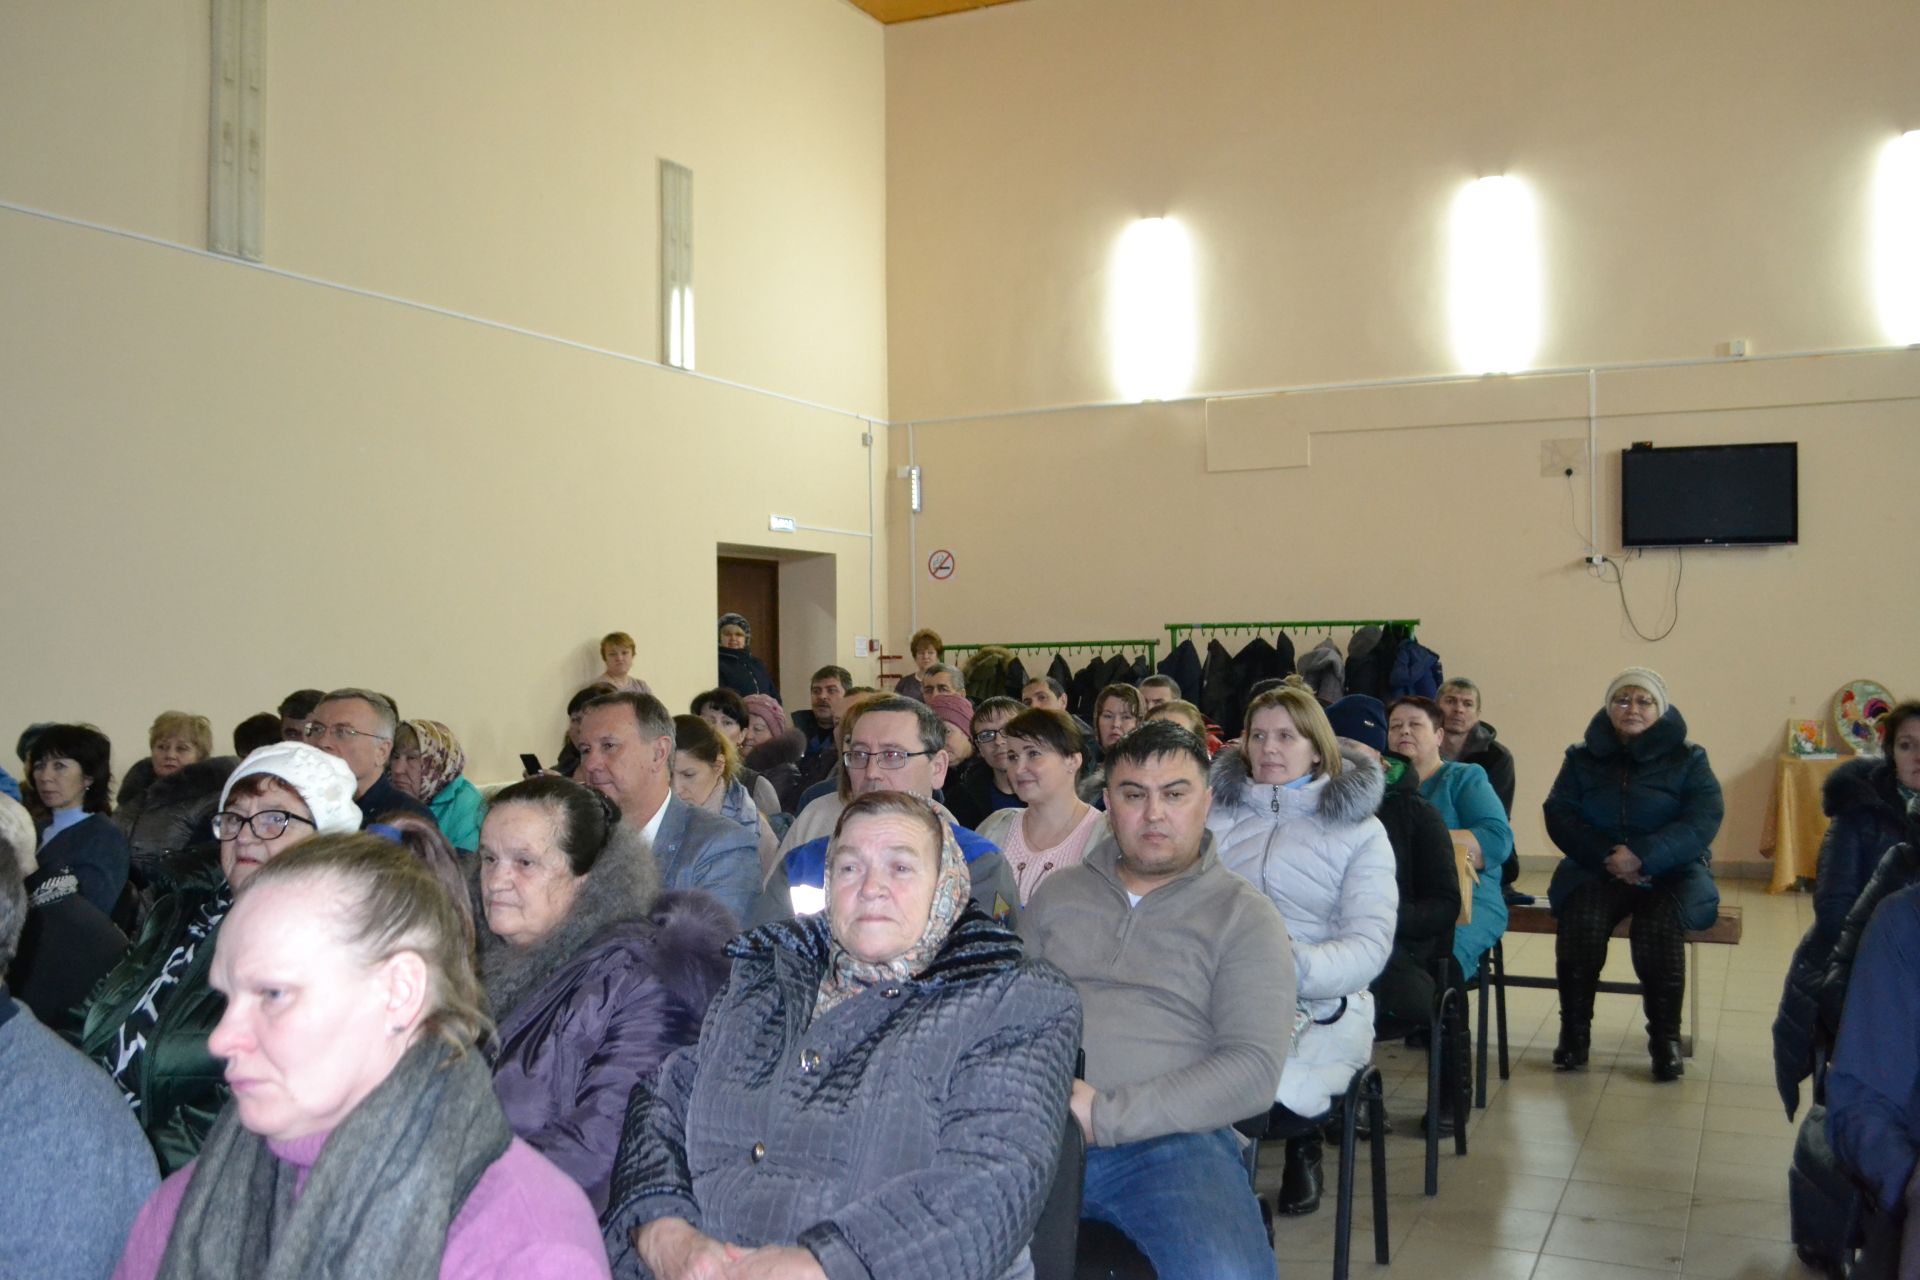 Глава района Марат Зиатдинов призвал кураловцев объединиться и решать проблемы сообща